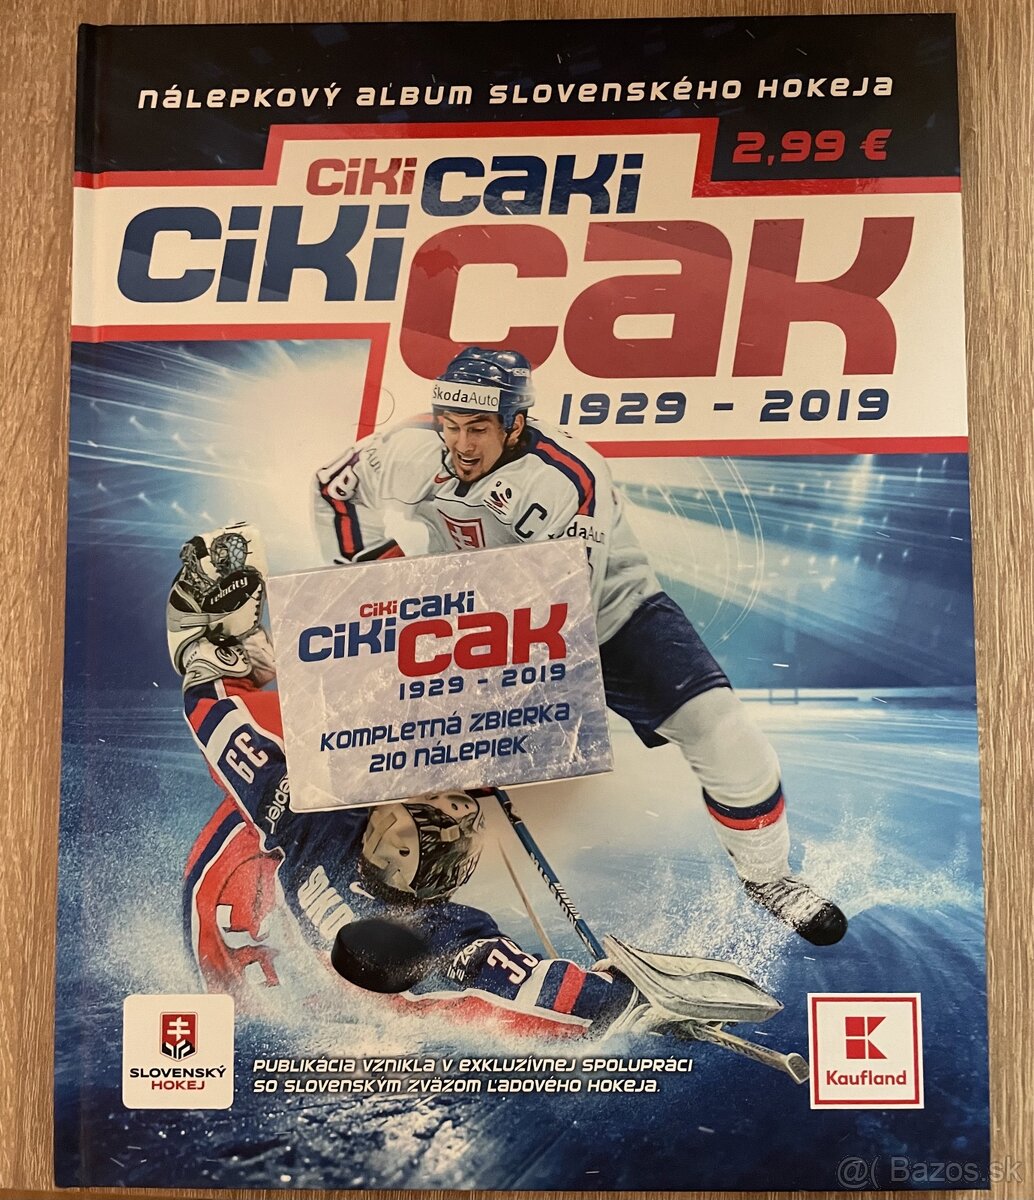 Ciki-caki hokejový album